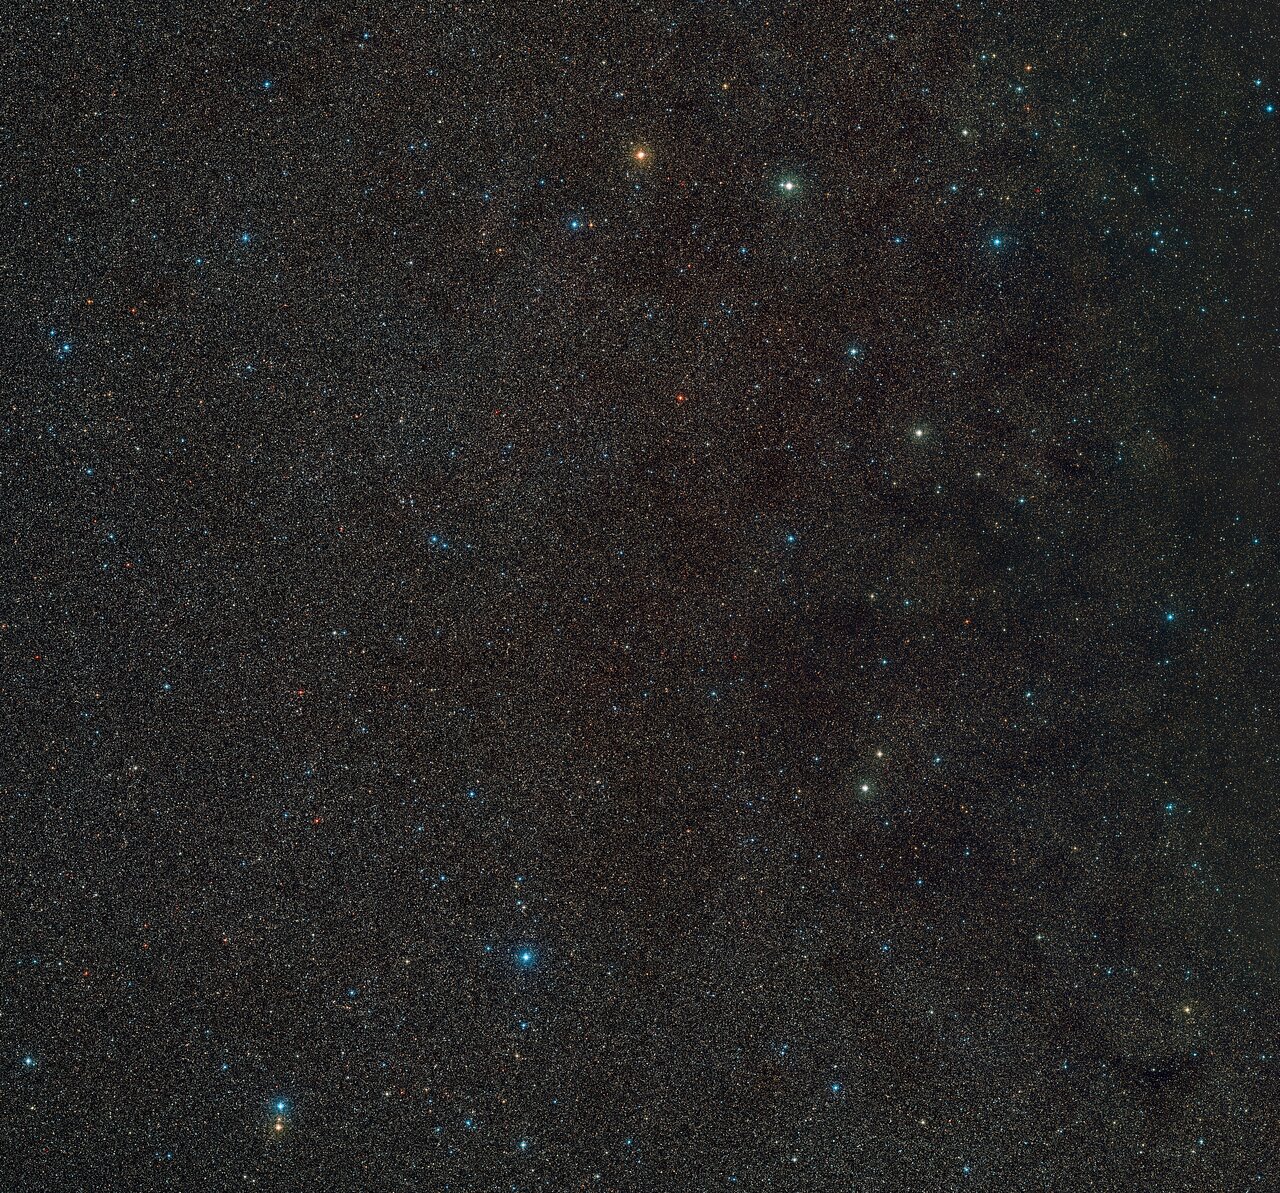 Ein Bild eines Weltraumflecks mit Hunderten entfernter Sterne